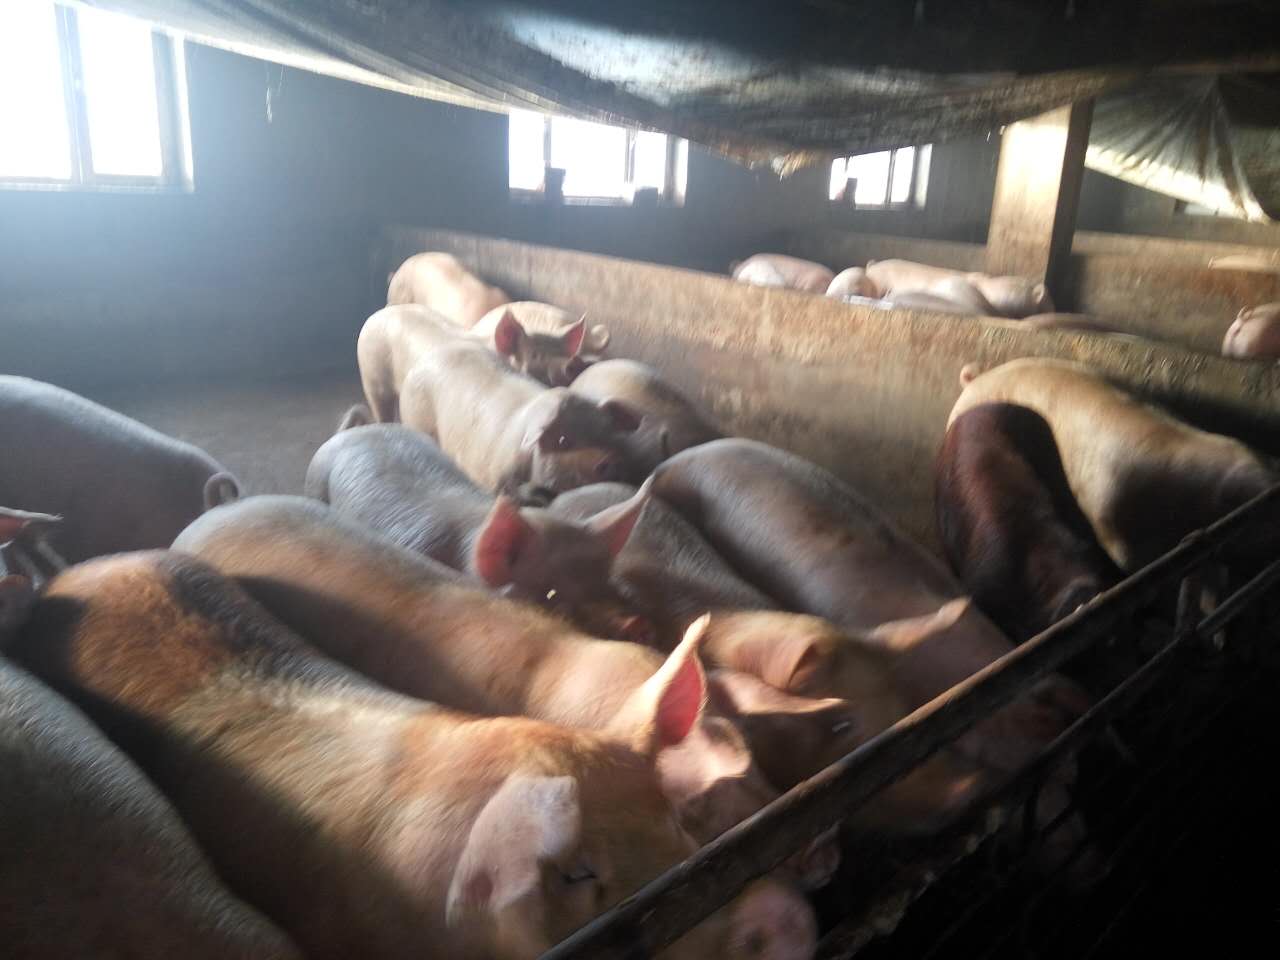 黑龙江大庆市生猪养殖找哪家，黑龙江大庆市生猪批发供应销售